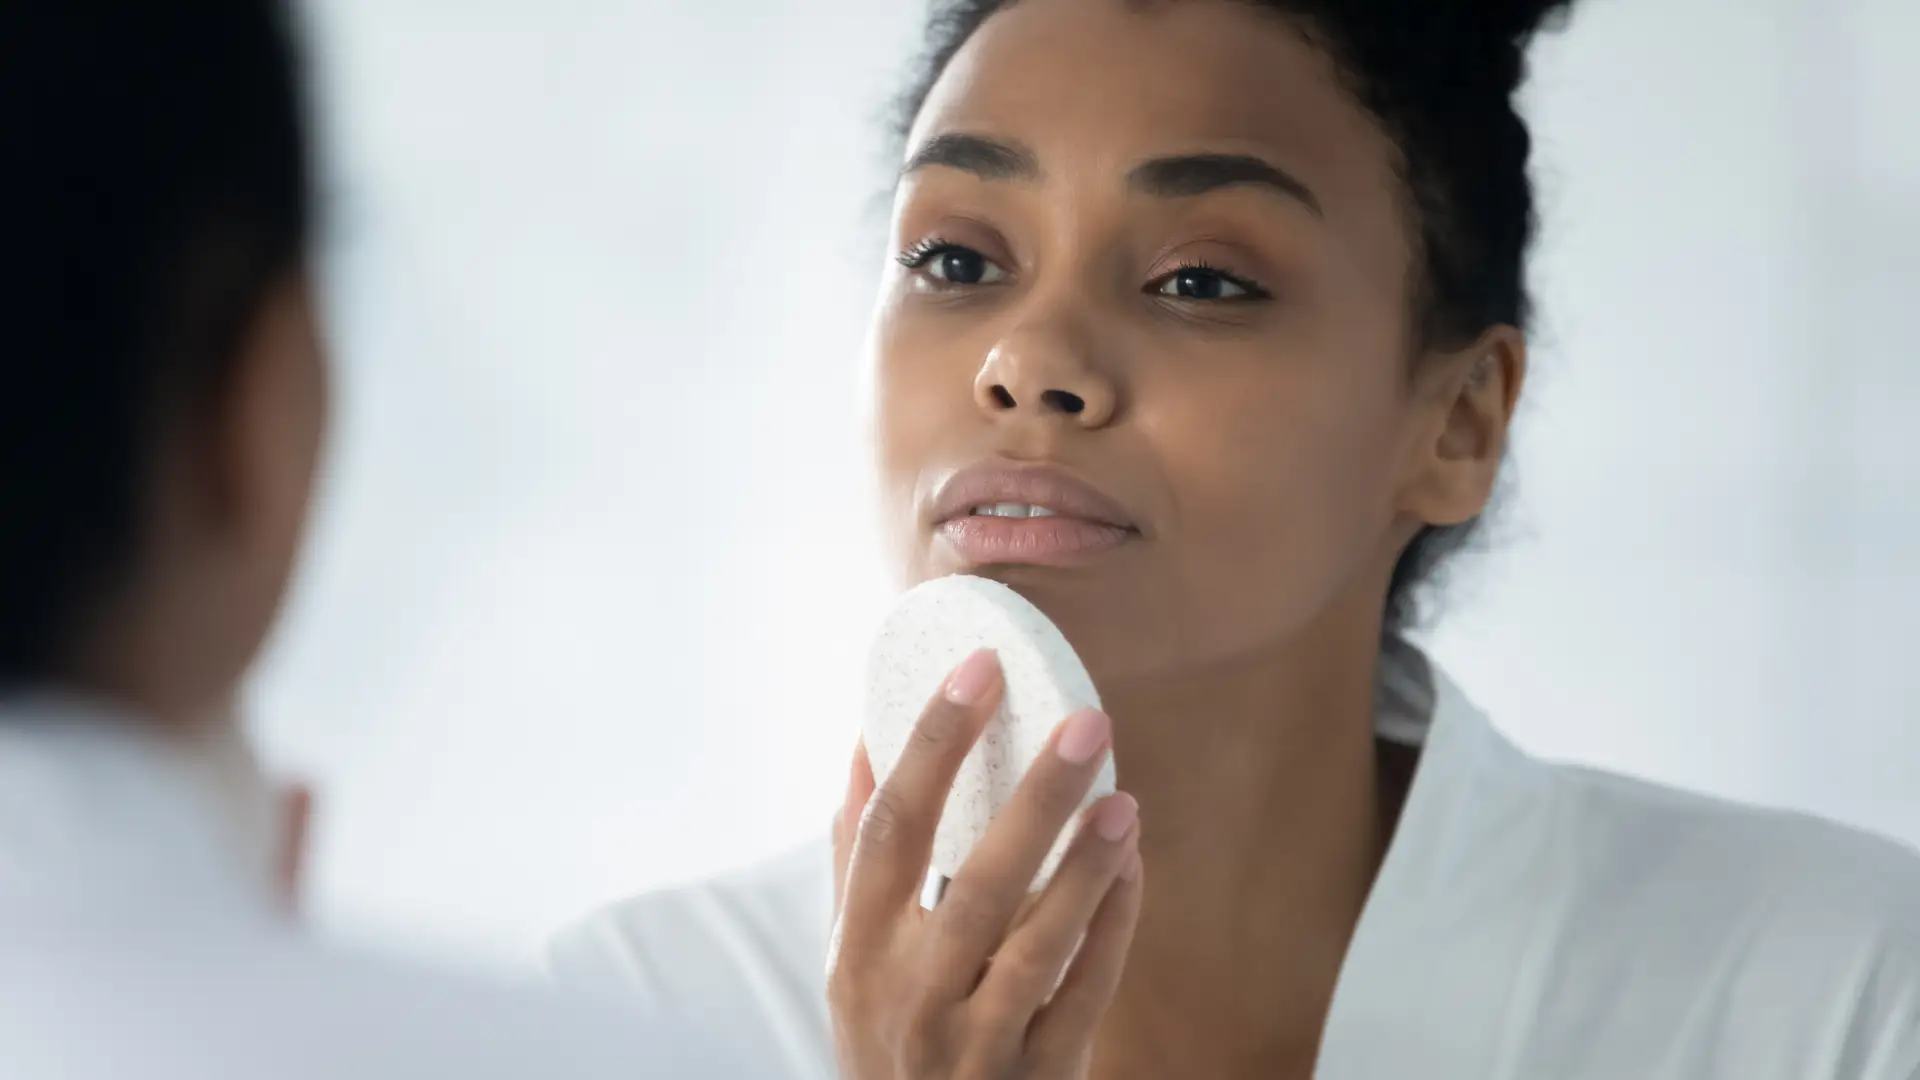 Sabonete facial: tudo que você precisa saber antes de comprar